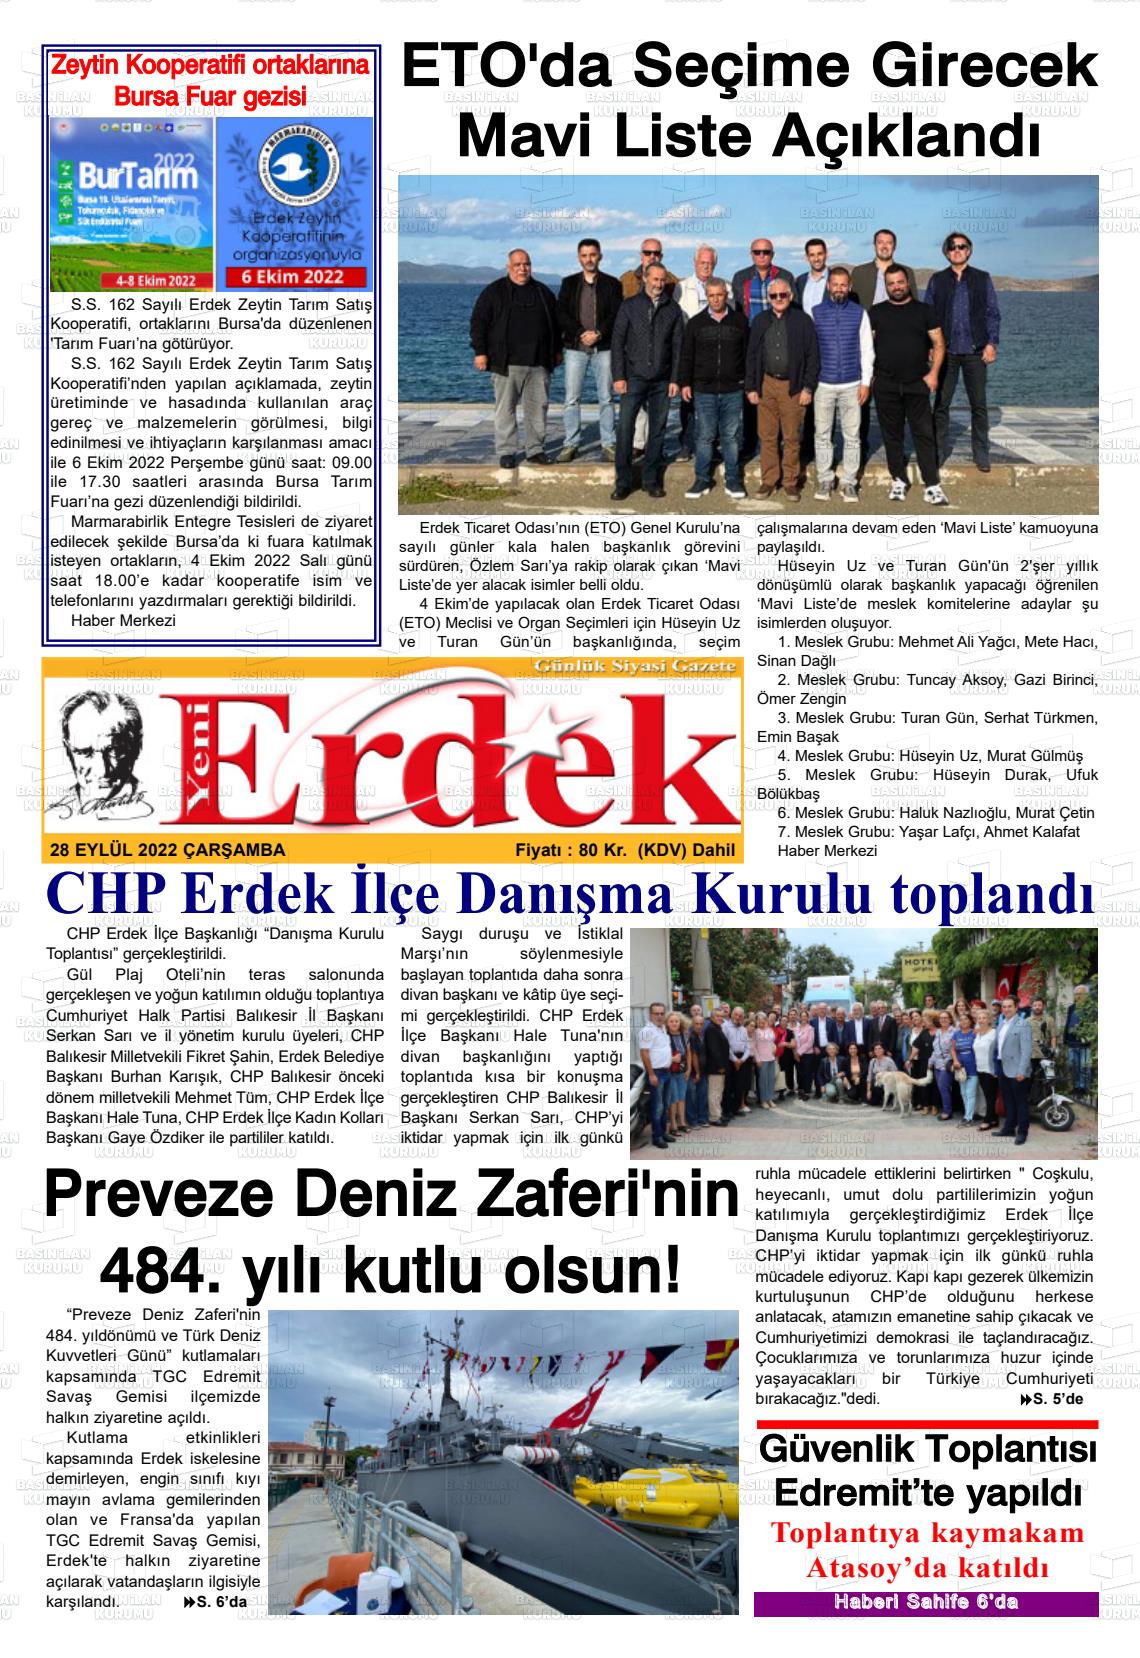 28 Eylül 2022 Yeni Erdek Gazete Manşeti